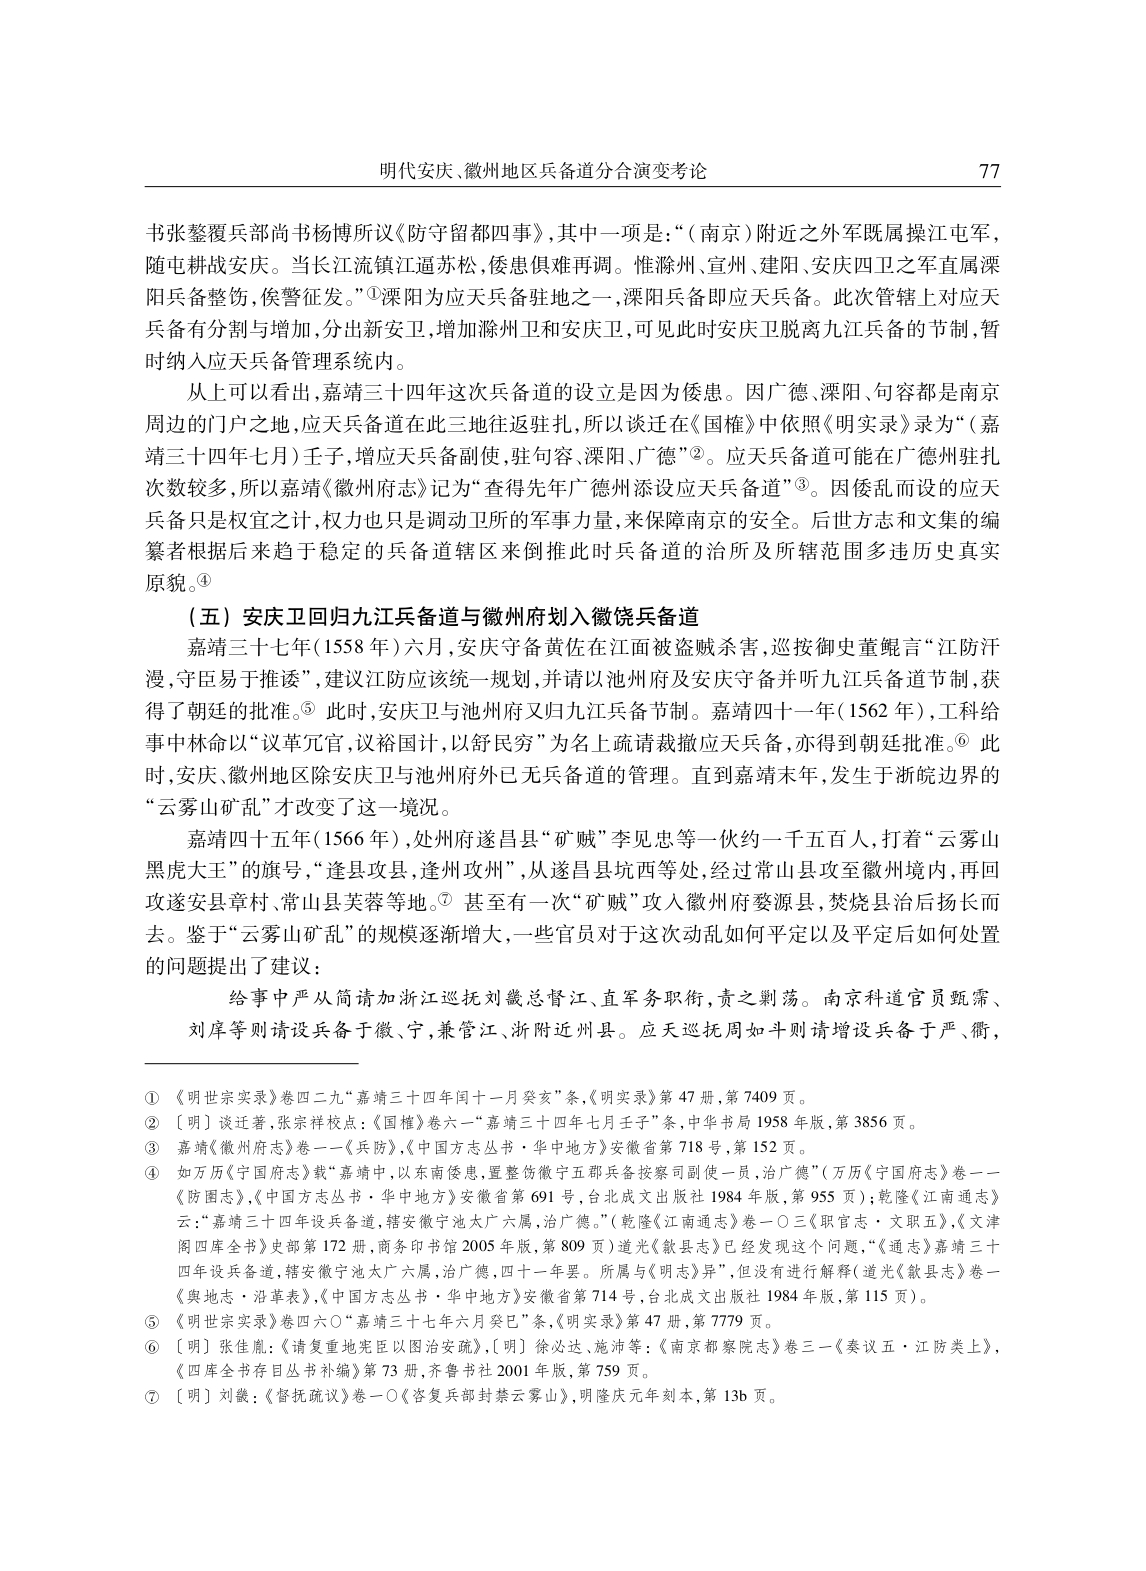 明代安庆、徽州地区兵备道分合演变考论_page-0006.jpg